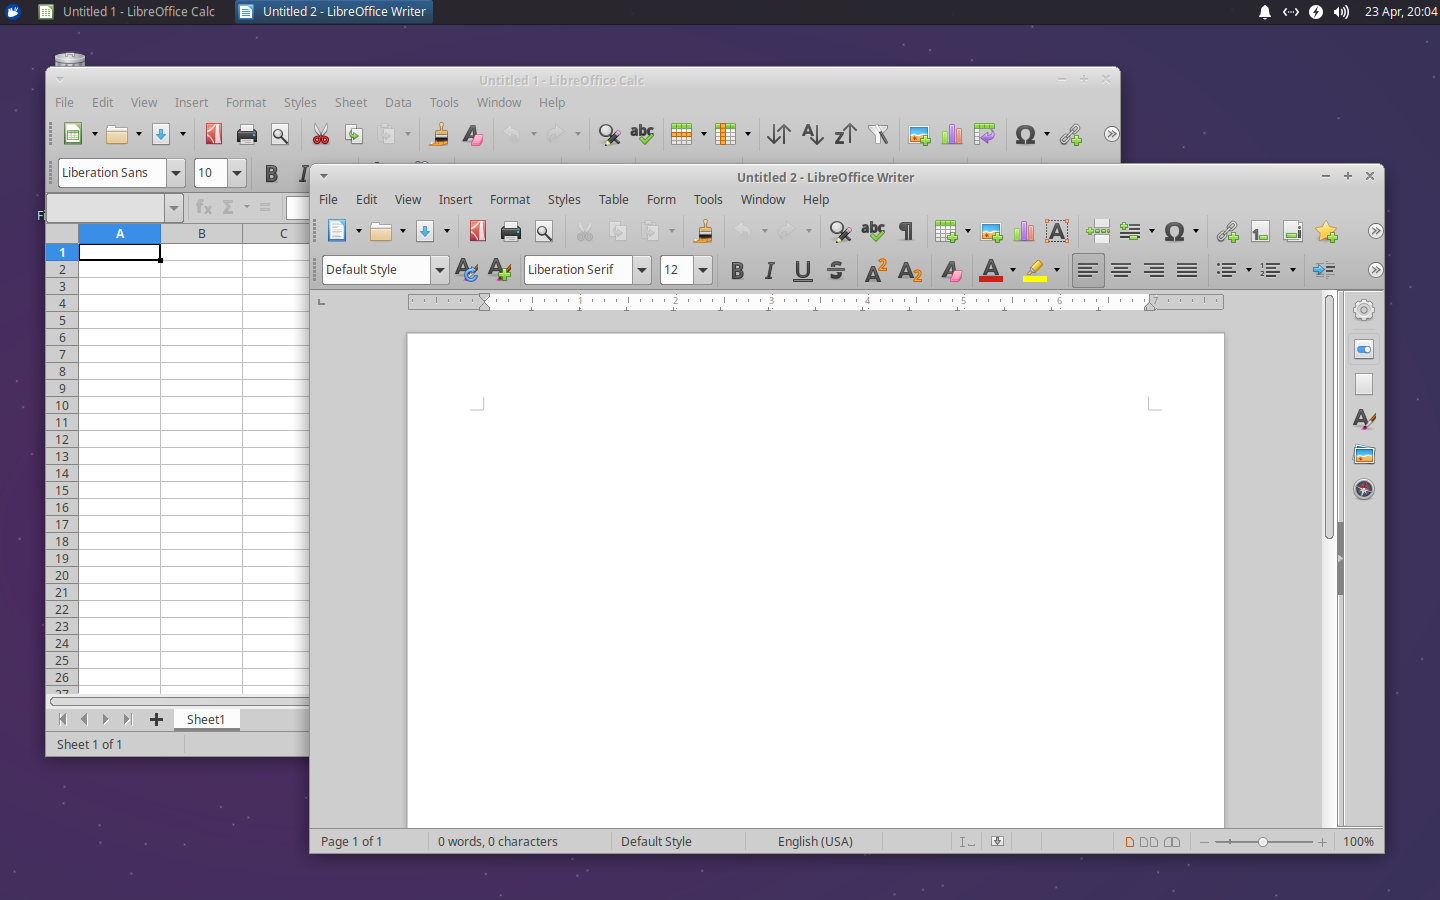 Xubuntu desktop